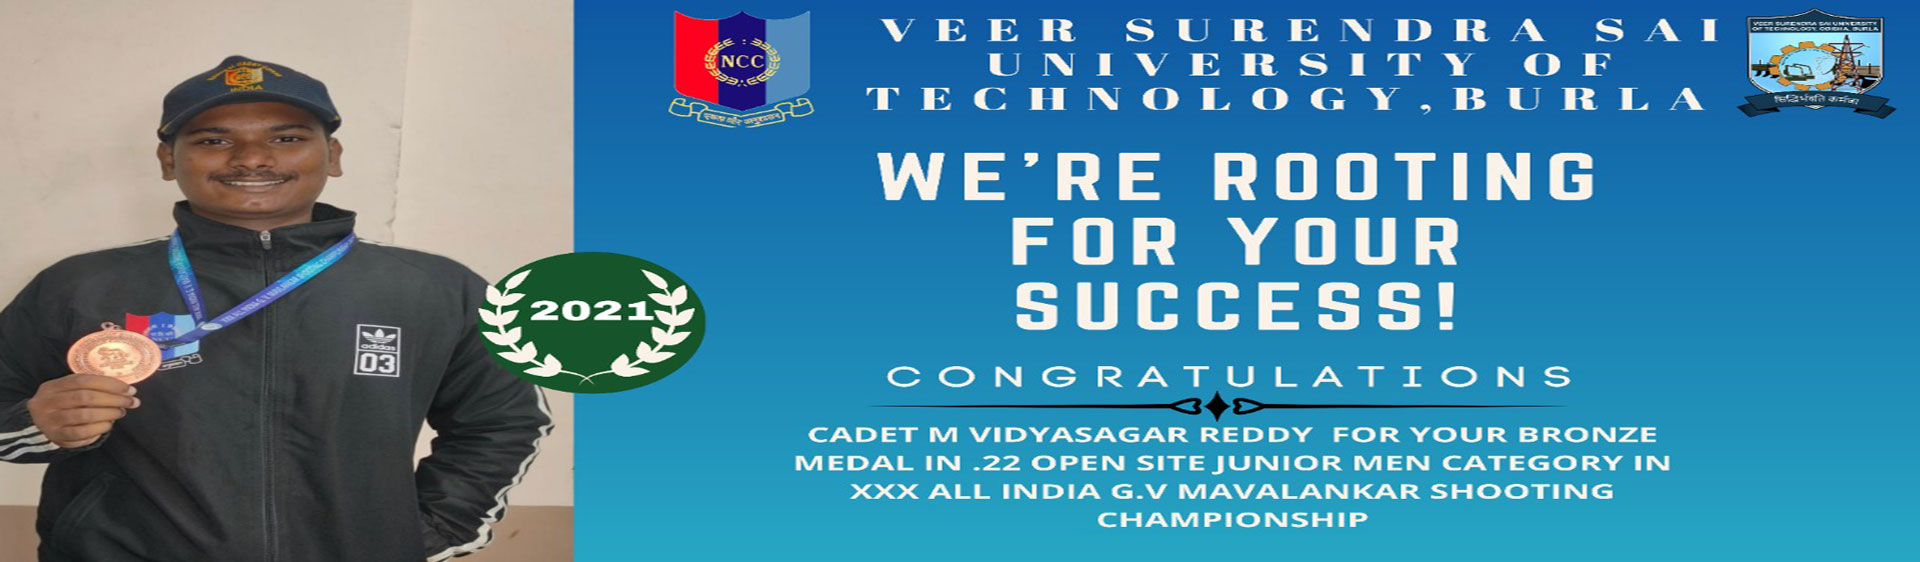 CDT M Vidyasagar Reddy won a bronze medal in .22 Open Sight Junior Men Category in the 30th  All India G V Mavalankar National Shooting Championship 2021